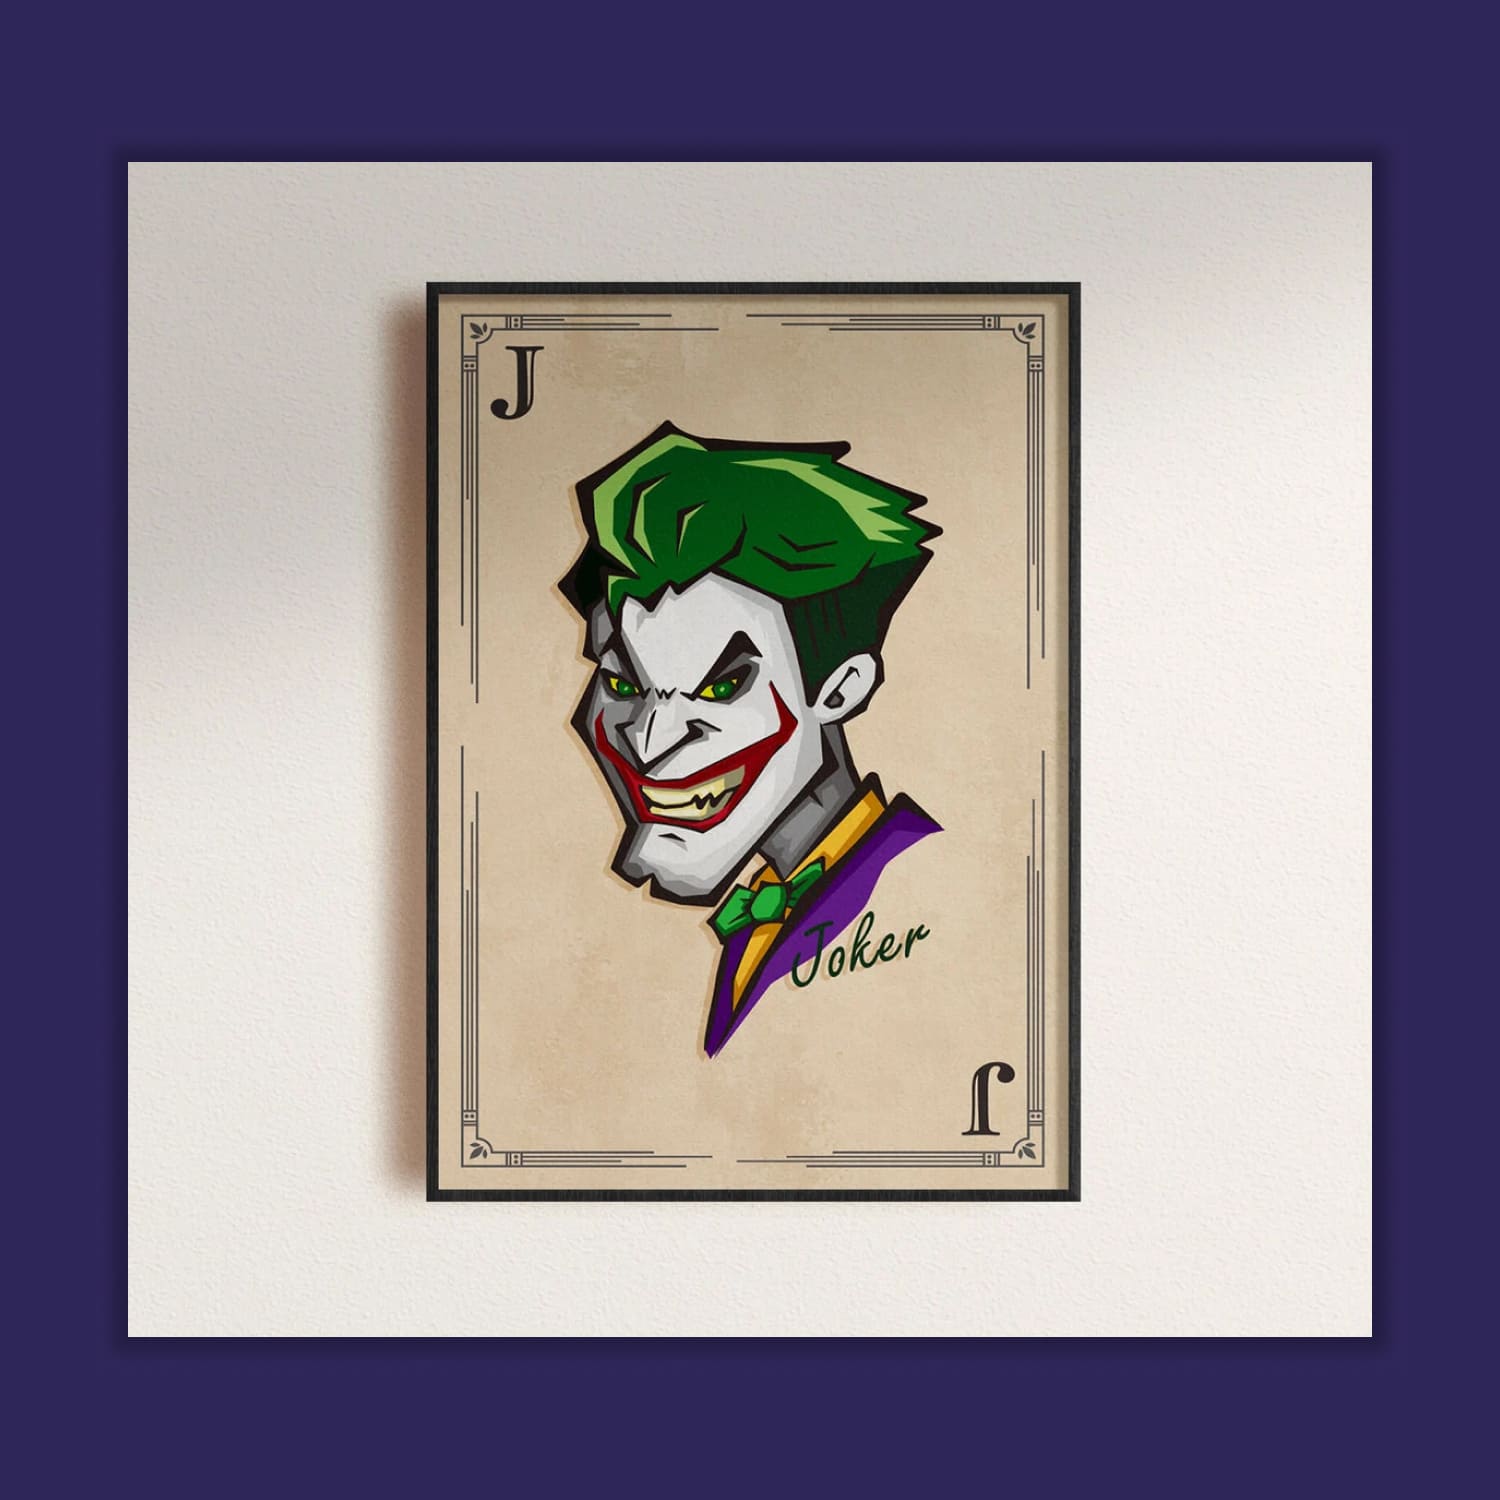 Joker art SVG cover.